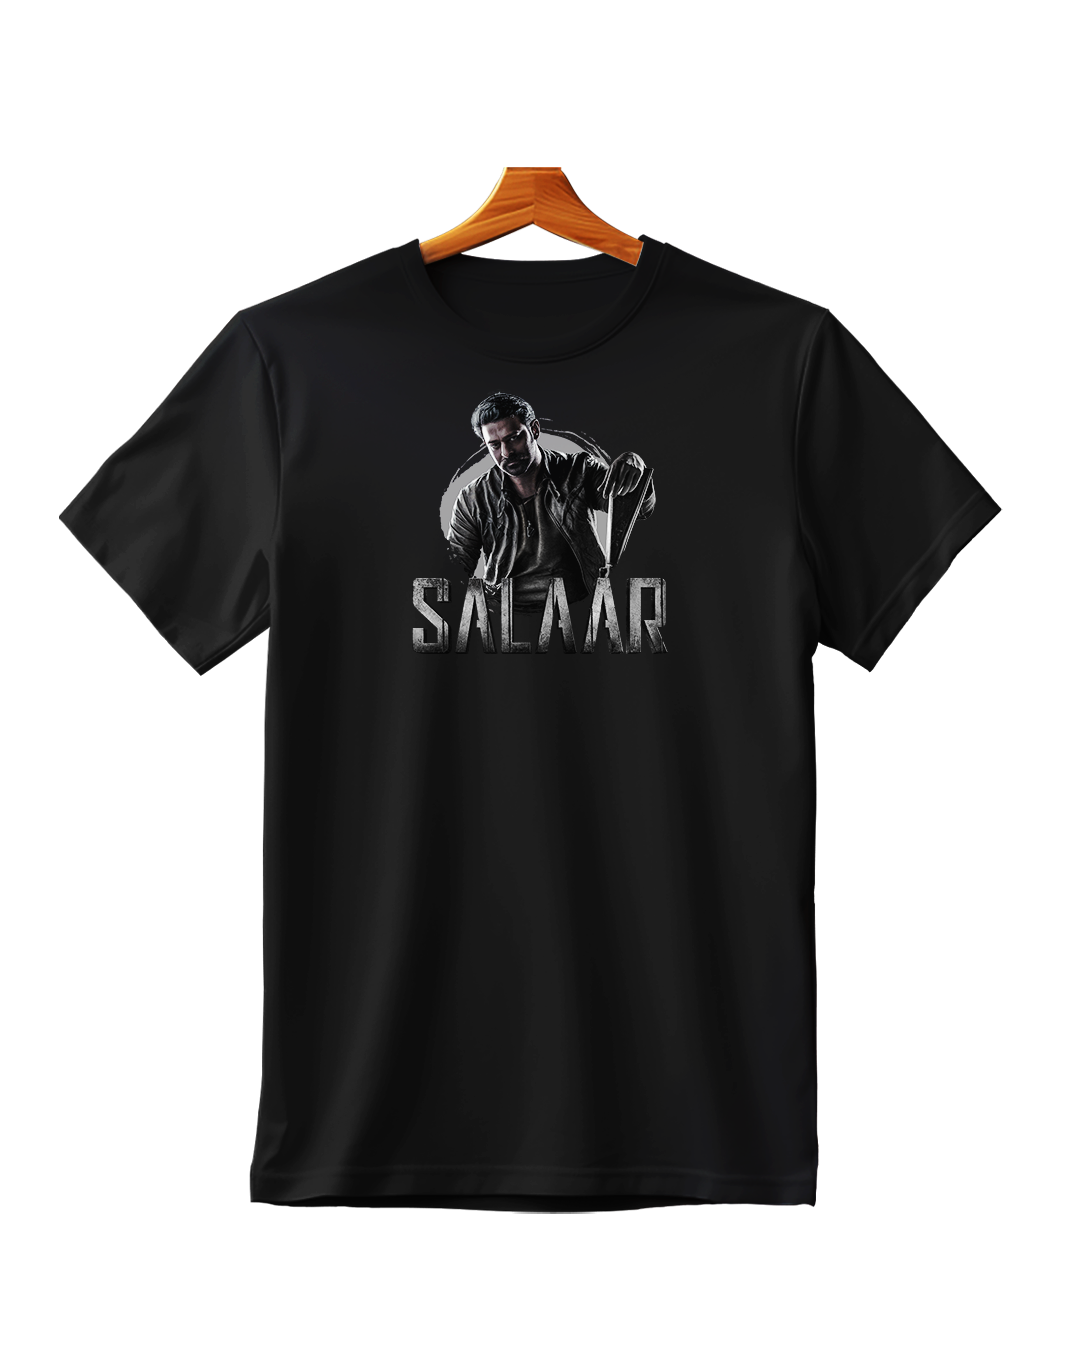 Prabhas Premium T-Shirt - Black